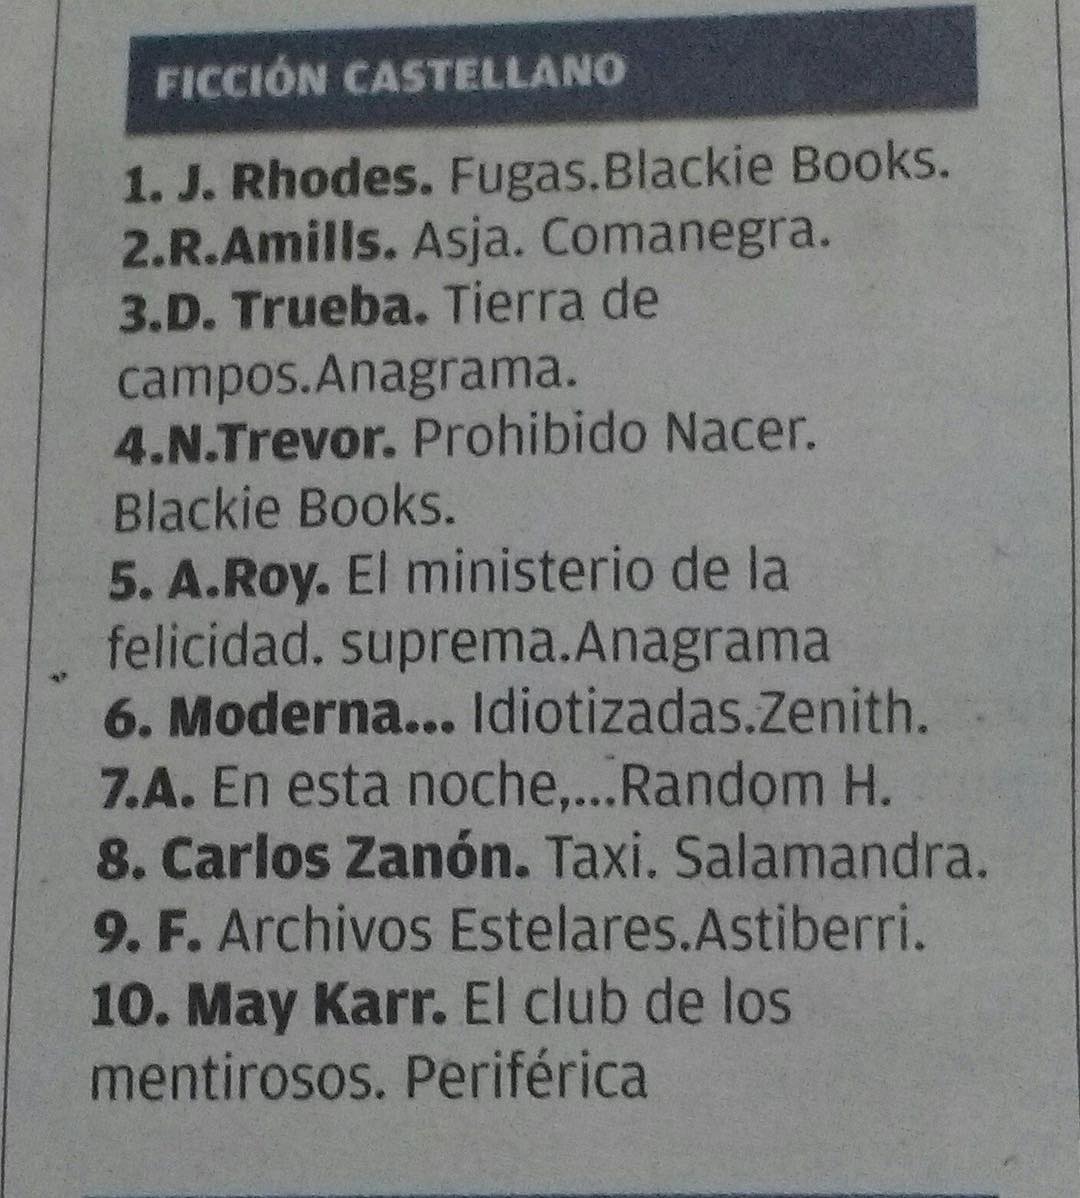 Esta semana #asjalacis es uno de los llibros más vendidos!!! @ratacorner @Comanegra @diariomallorca